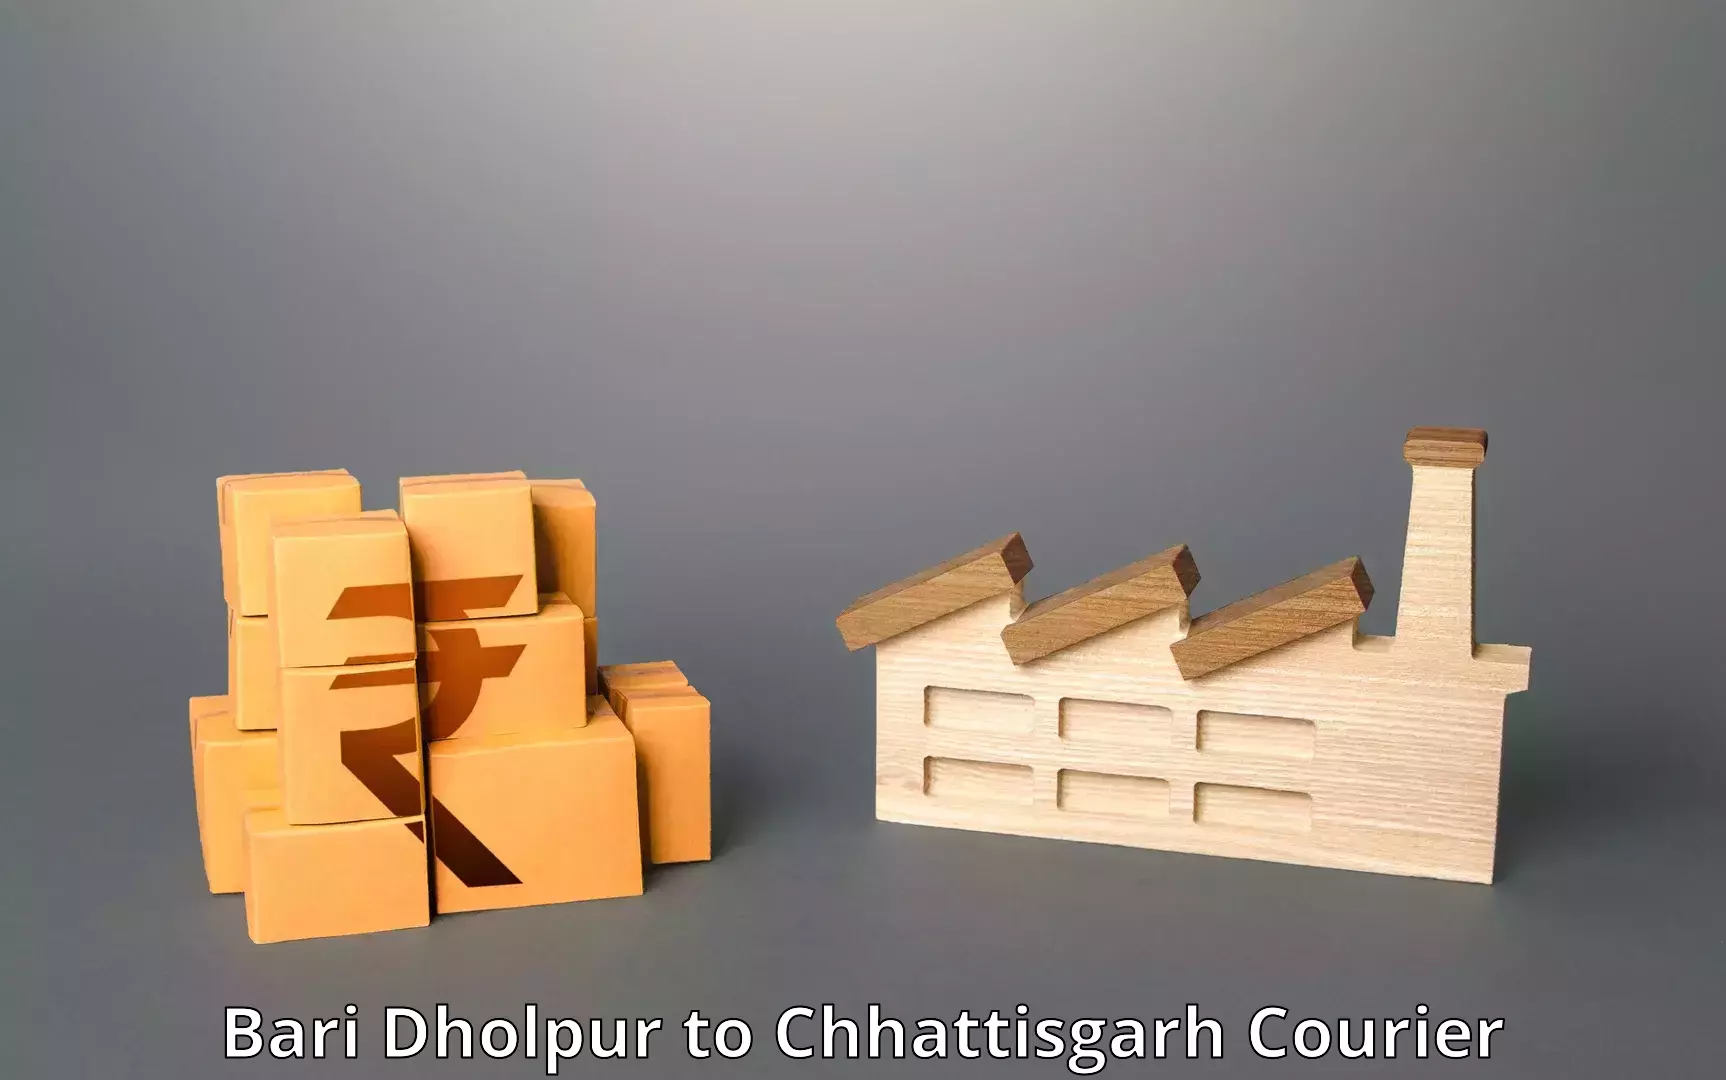 User-friendly delivery service Bari Dholpur to Chhattisgarh